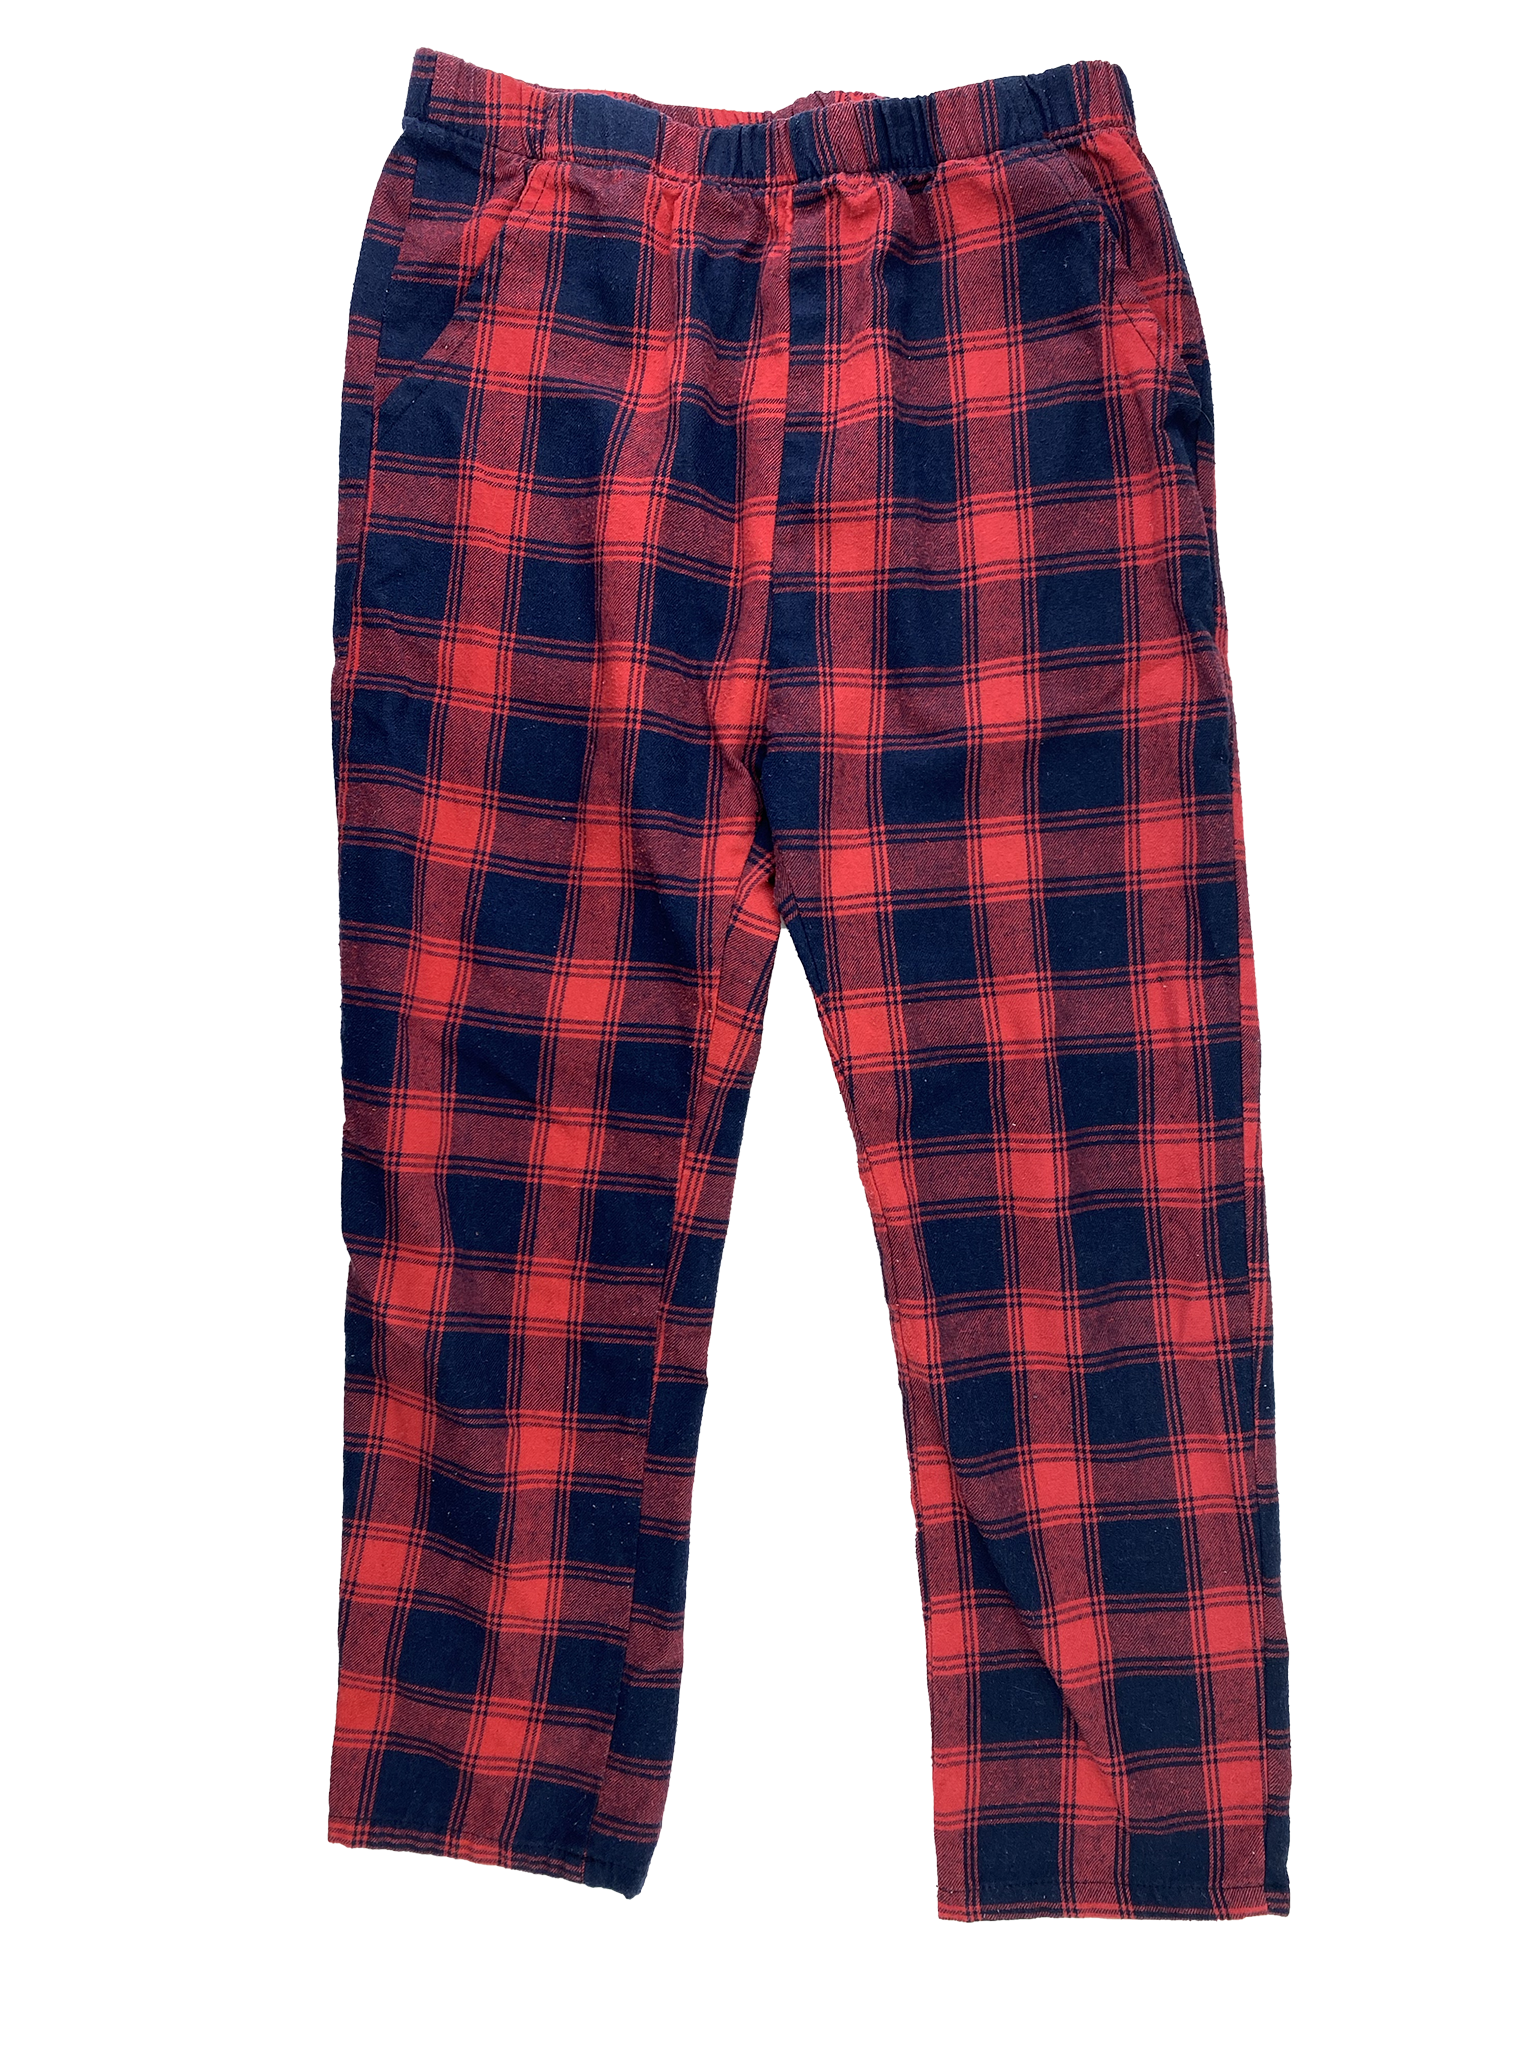 Red Plaid Pajamas Pants 